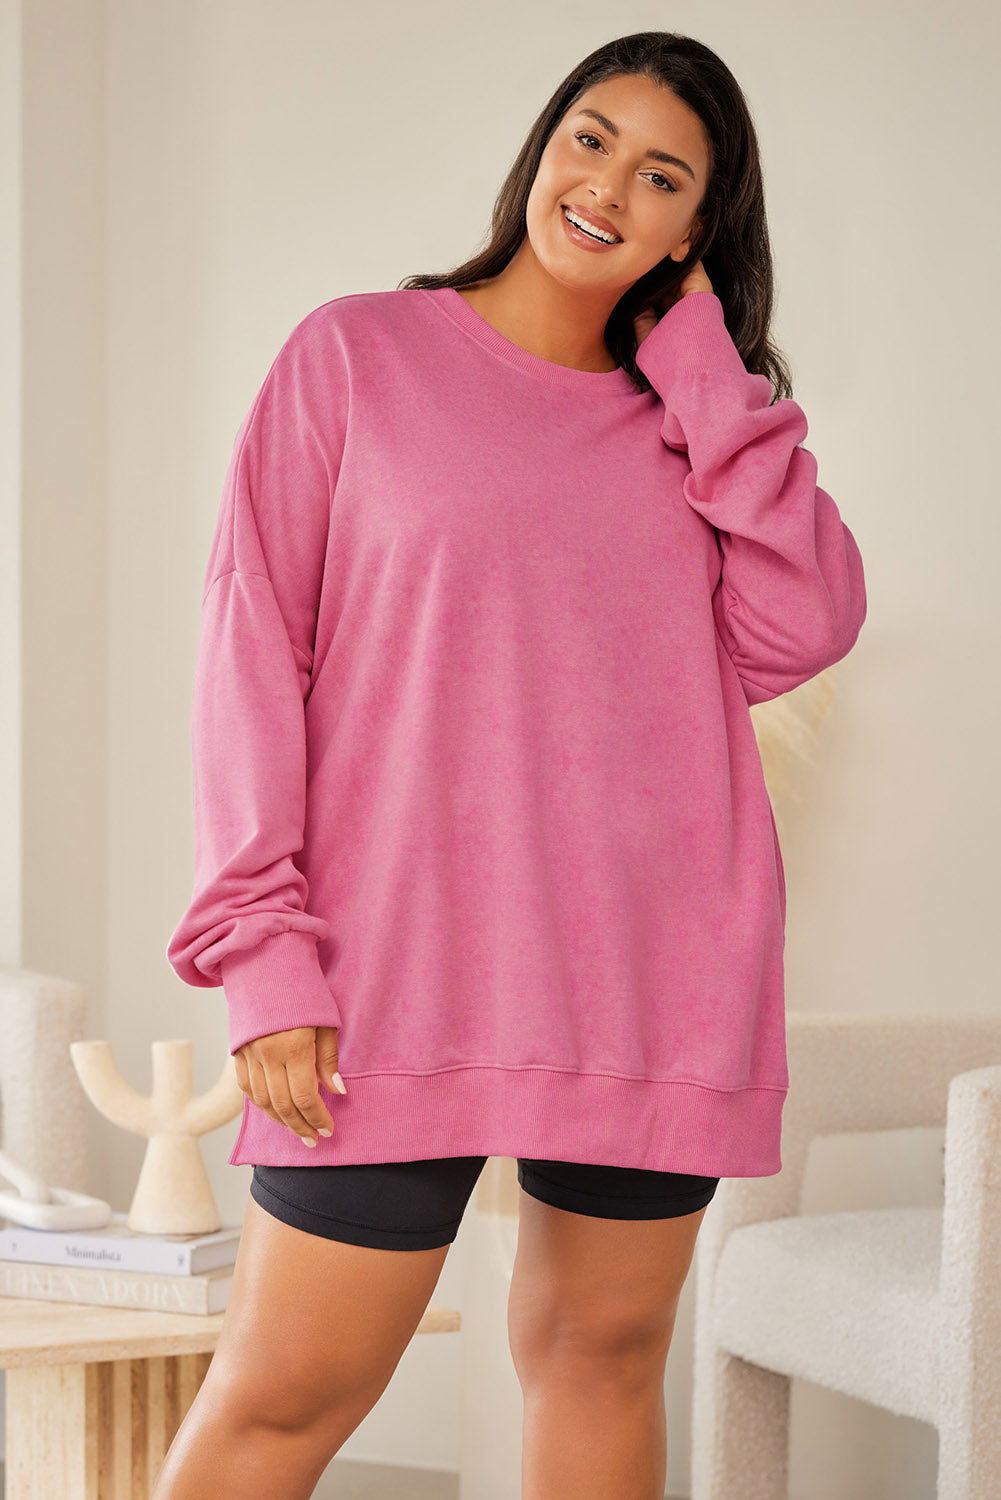 Sweat-shirt rose à épaules tombantes et bordure côtelée, grande taille